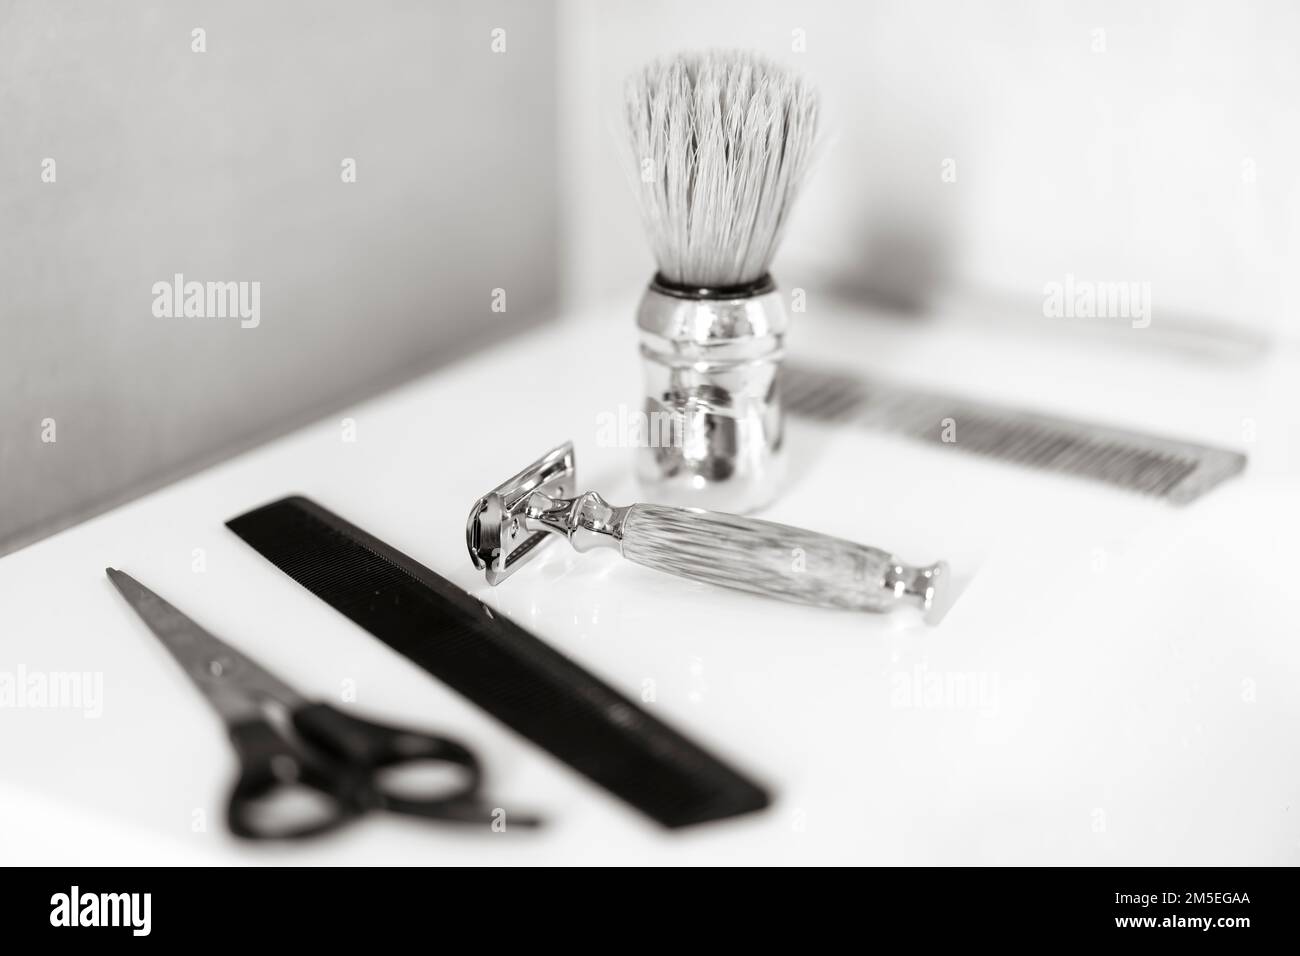 Retro-Rasur und Haarzubehör für Männer - Nahaufnahme von umweltfreundlichen Geräten für Rasur und Haar - Beauty, Hygiene, Rasur und Pflege Konzept in Sust Stockfoto